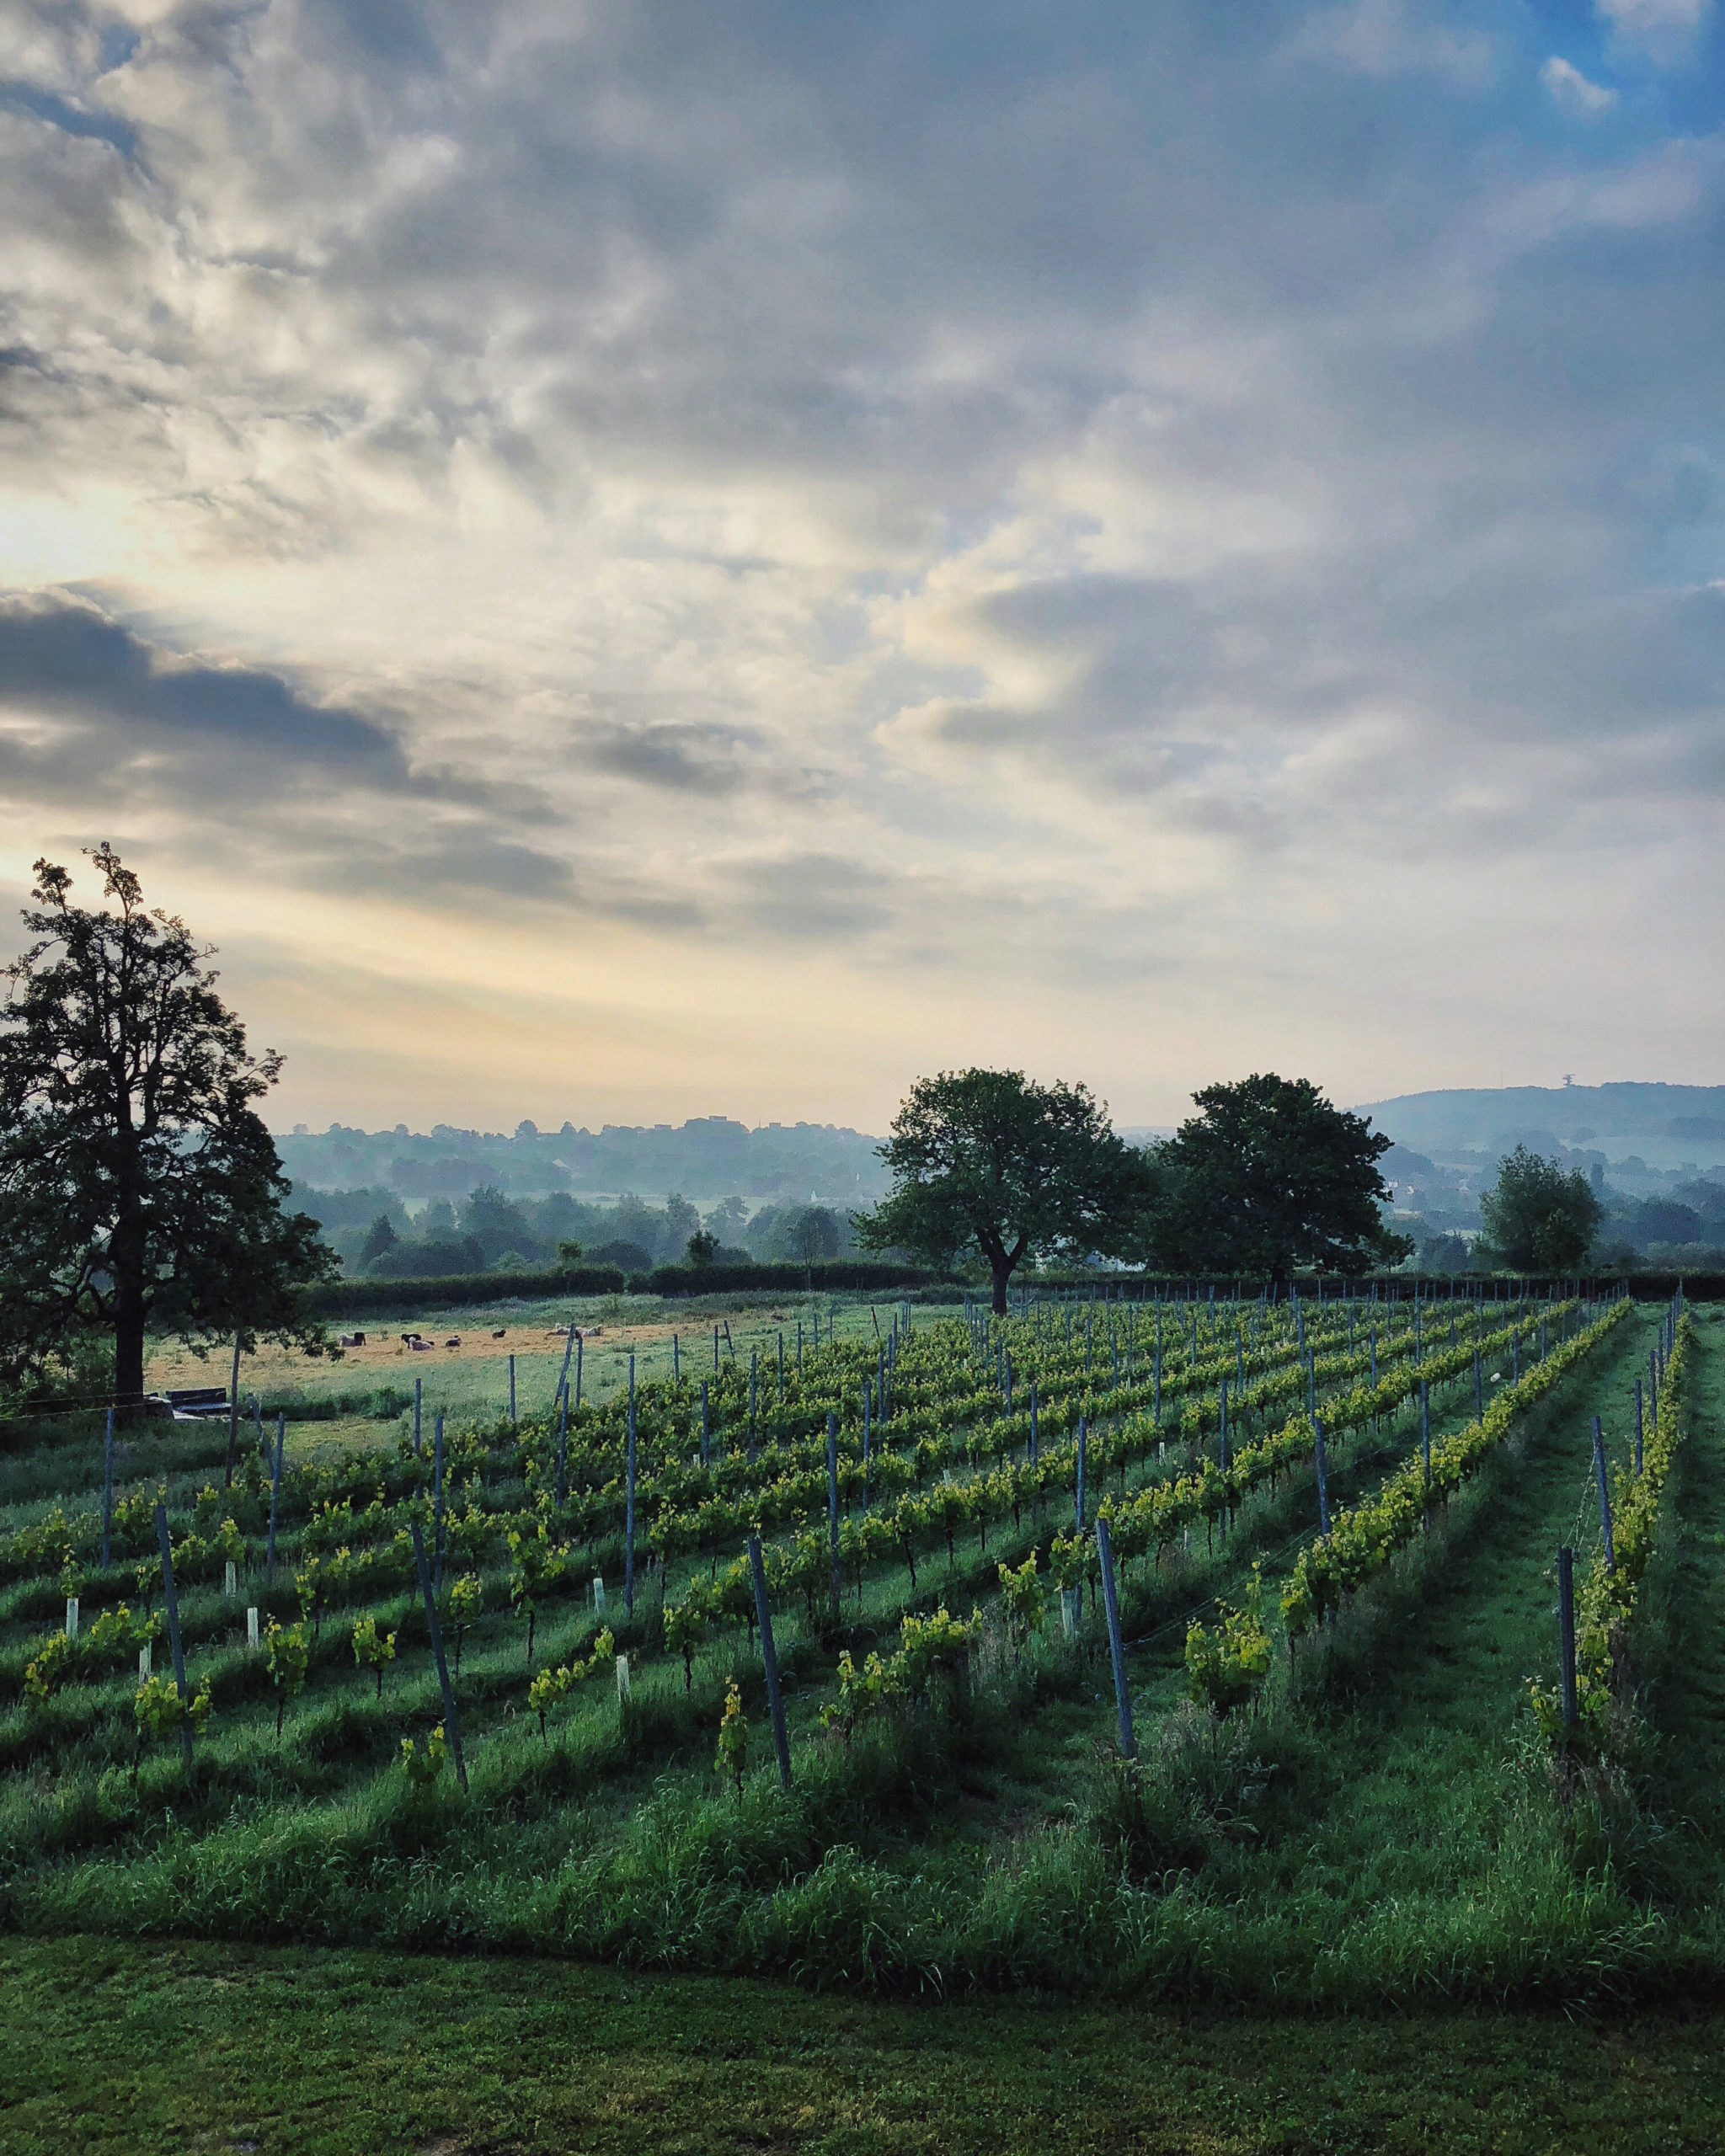 Wandelen in een landschap dat doet denken aan Frankrijk, maar gewoon in Nederland blijven? Dat kan! Ga wandelen langs de wijngaarden in Zuid-Limburg.